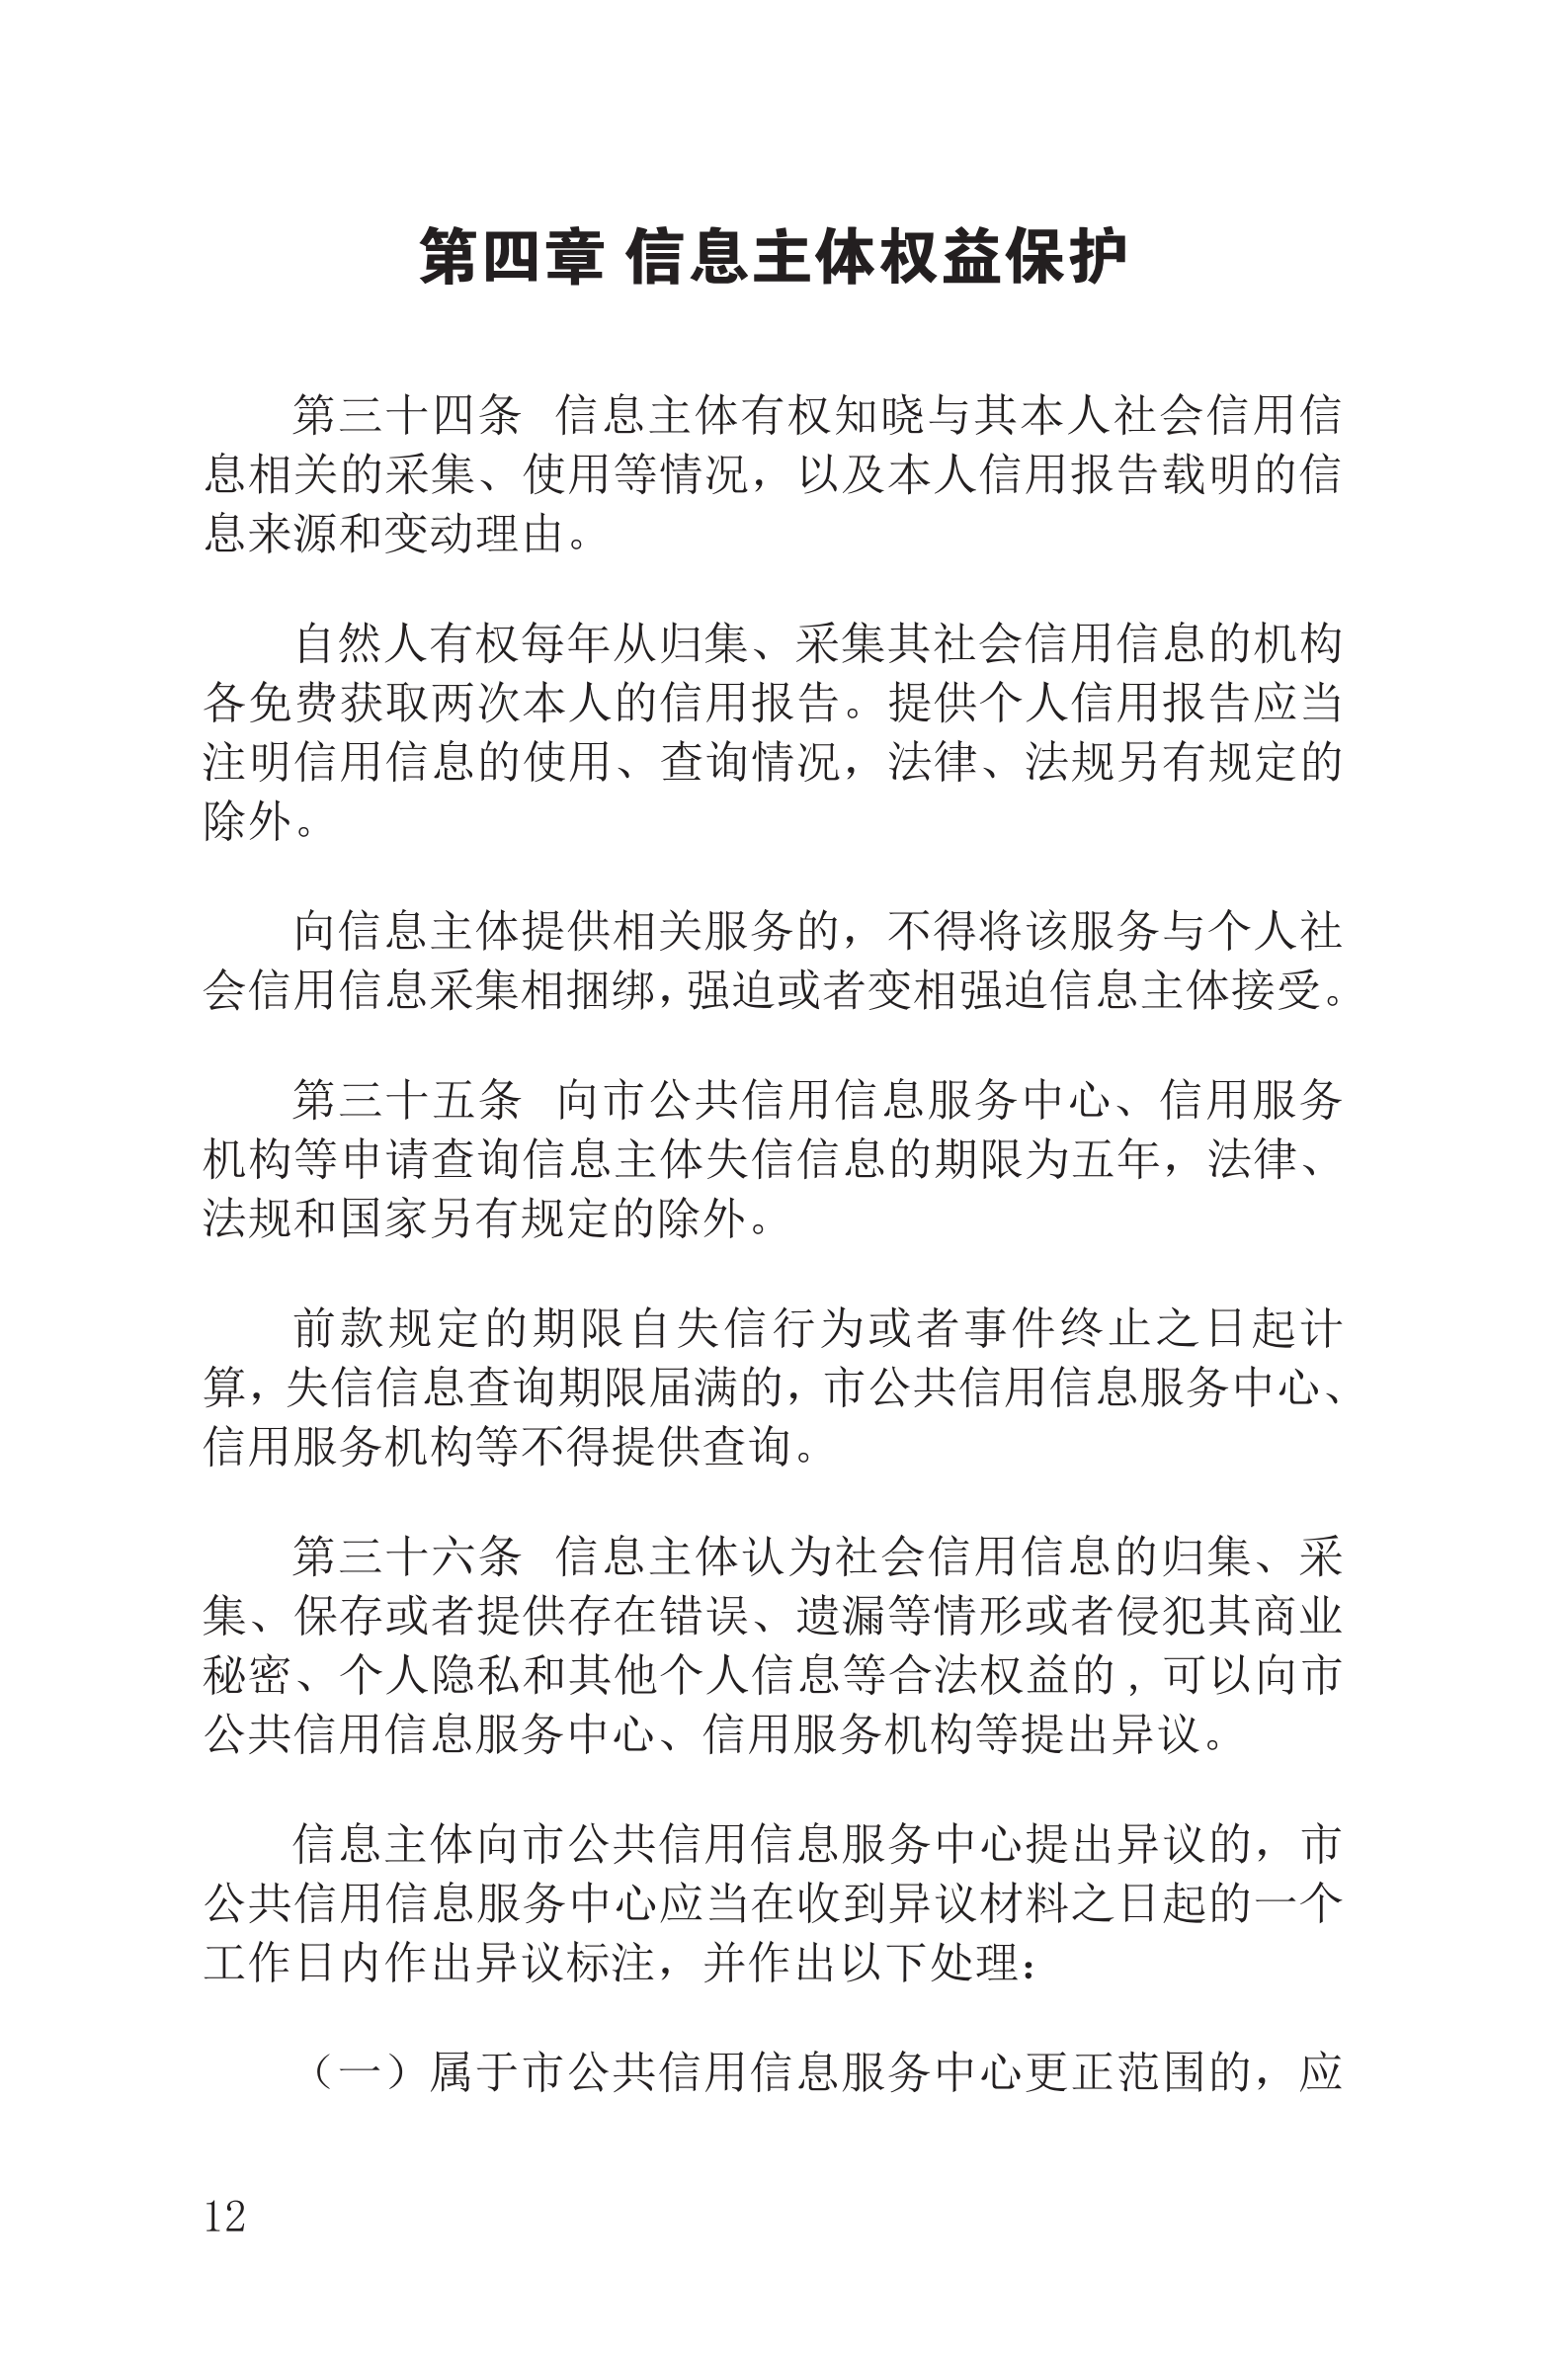 上海市社会信用条例_13.png